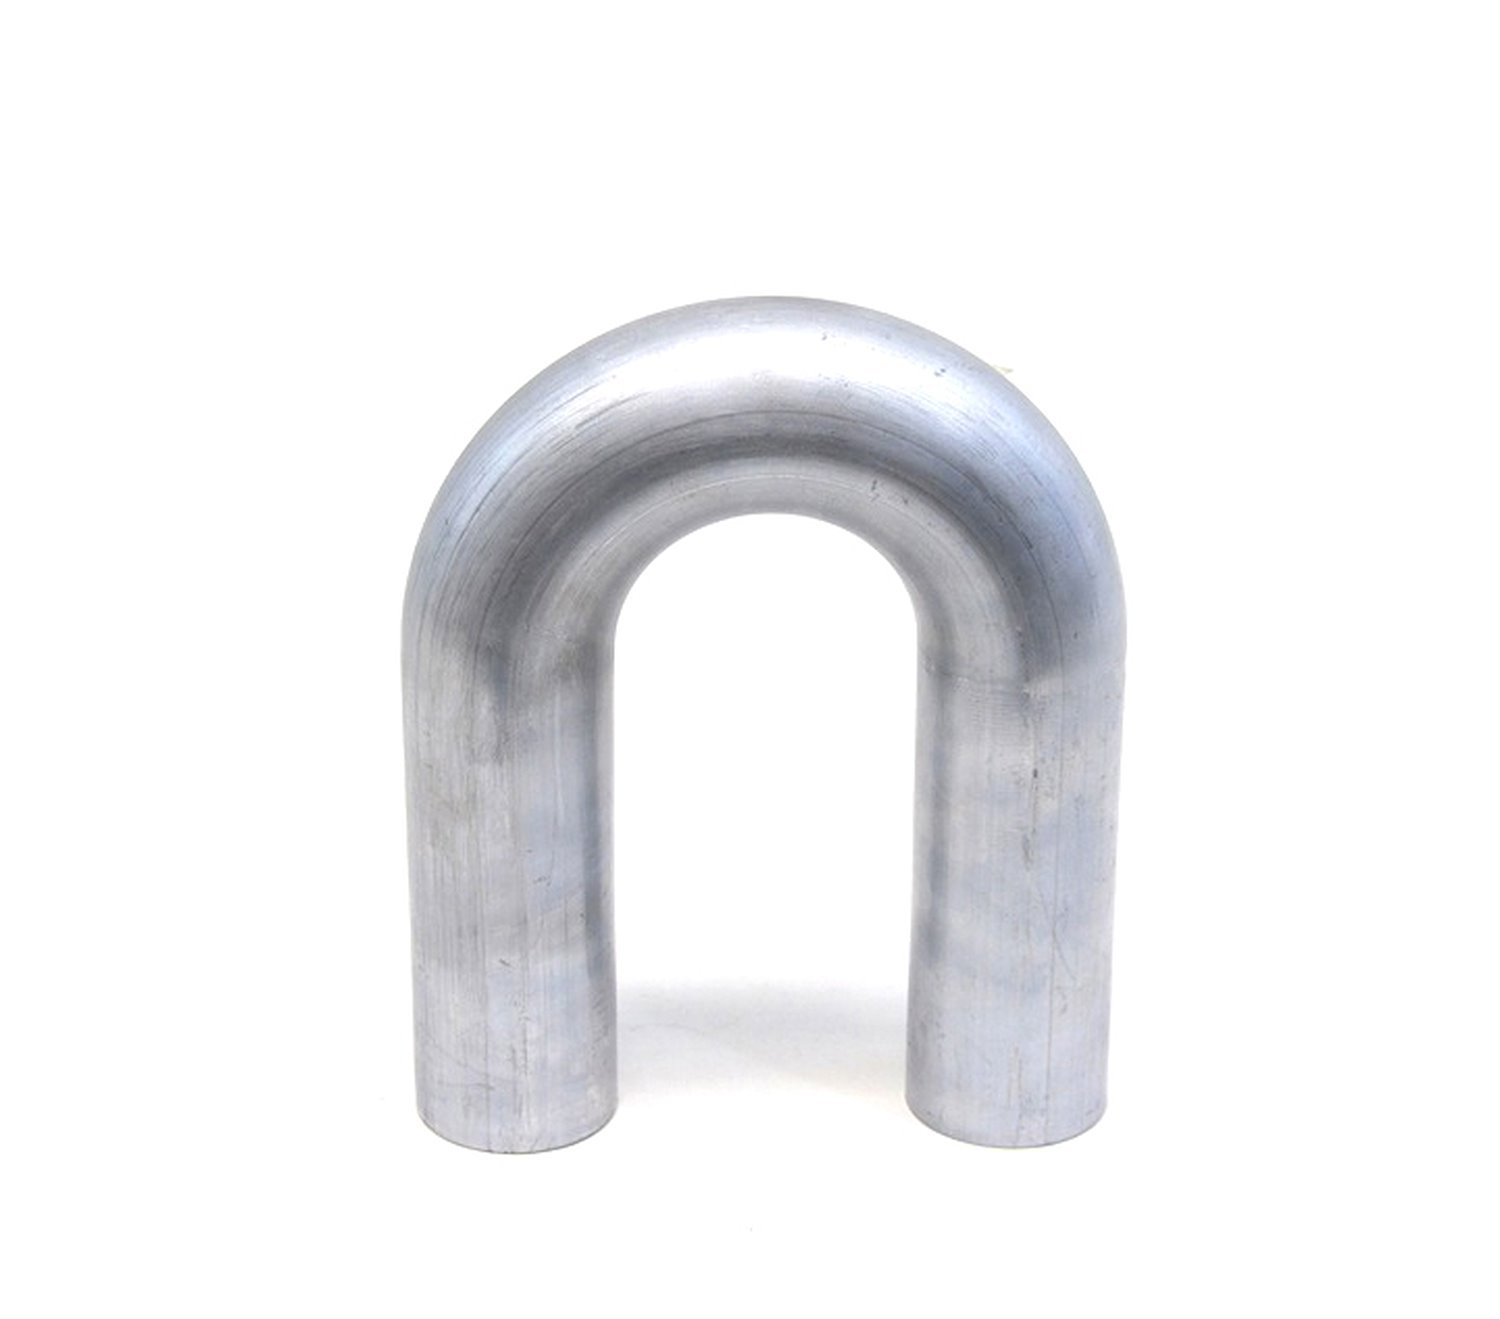 AT180-150-CLR-175 Aluminum Elbow Tube, 6061 Aluminum, 180-Degree U Bend Elbow Tubing, 1-1/2 in. OD, Tight Radius, 1-3/4 in. CLR